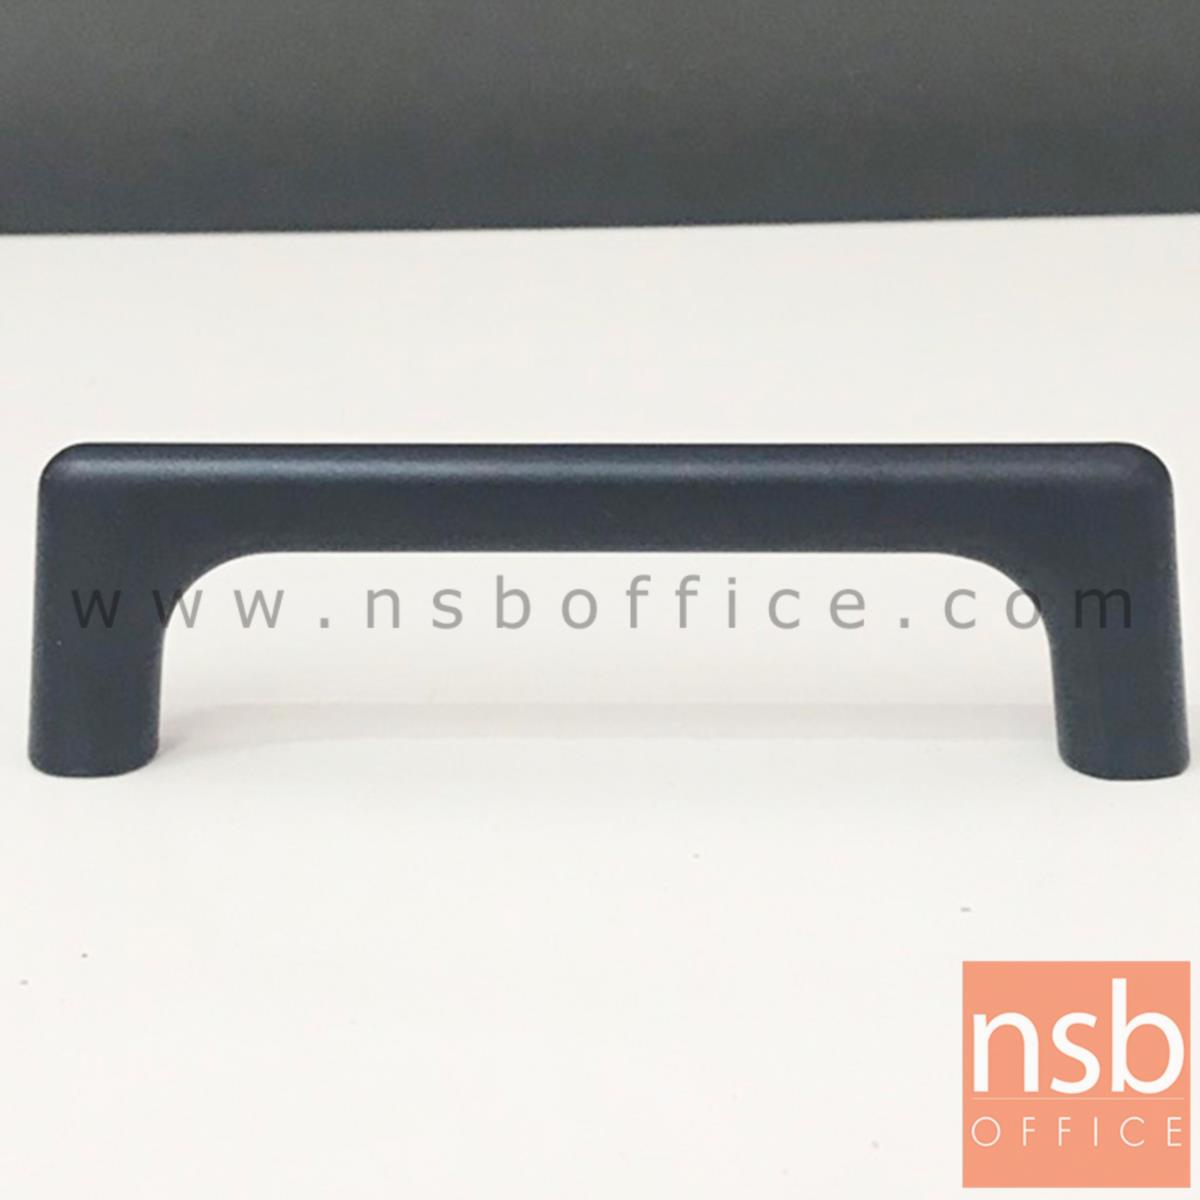 F10A003:มือจับตู้ อลูมิเนียมสีดำด้านโค้งรับมือ รุ่น NSB-HAND2  (ขนาด 96 mm)